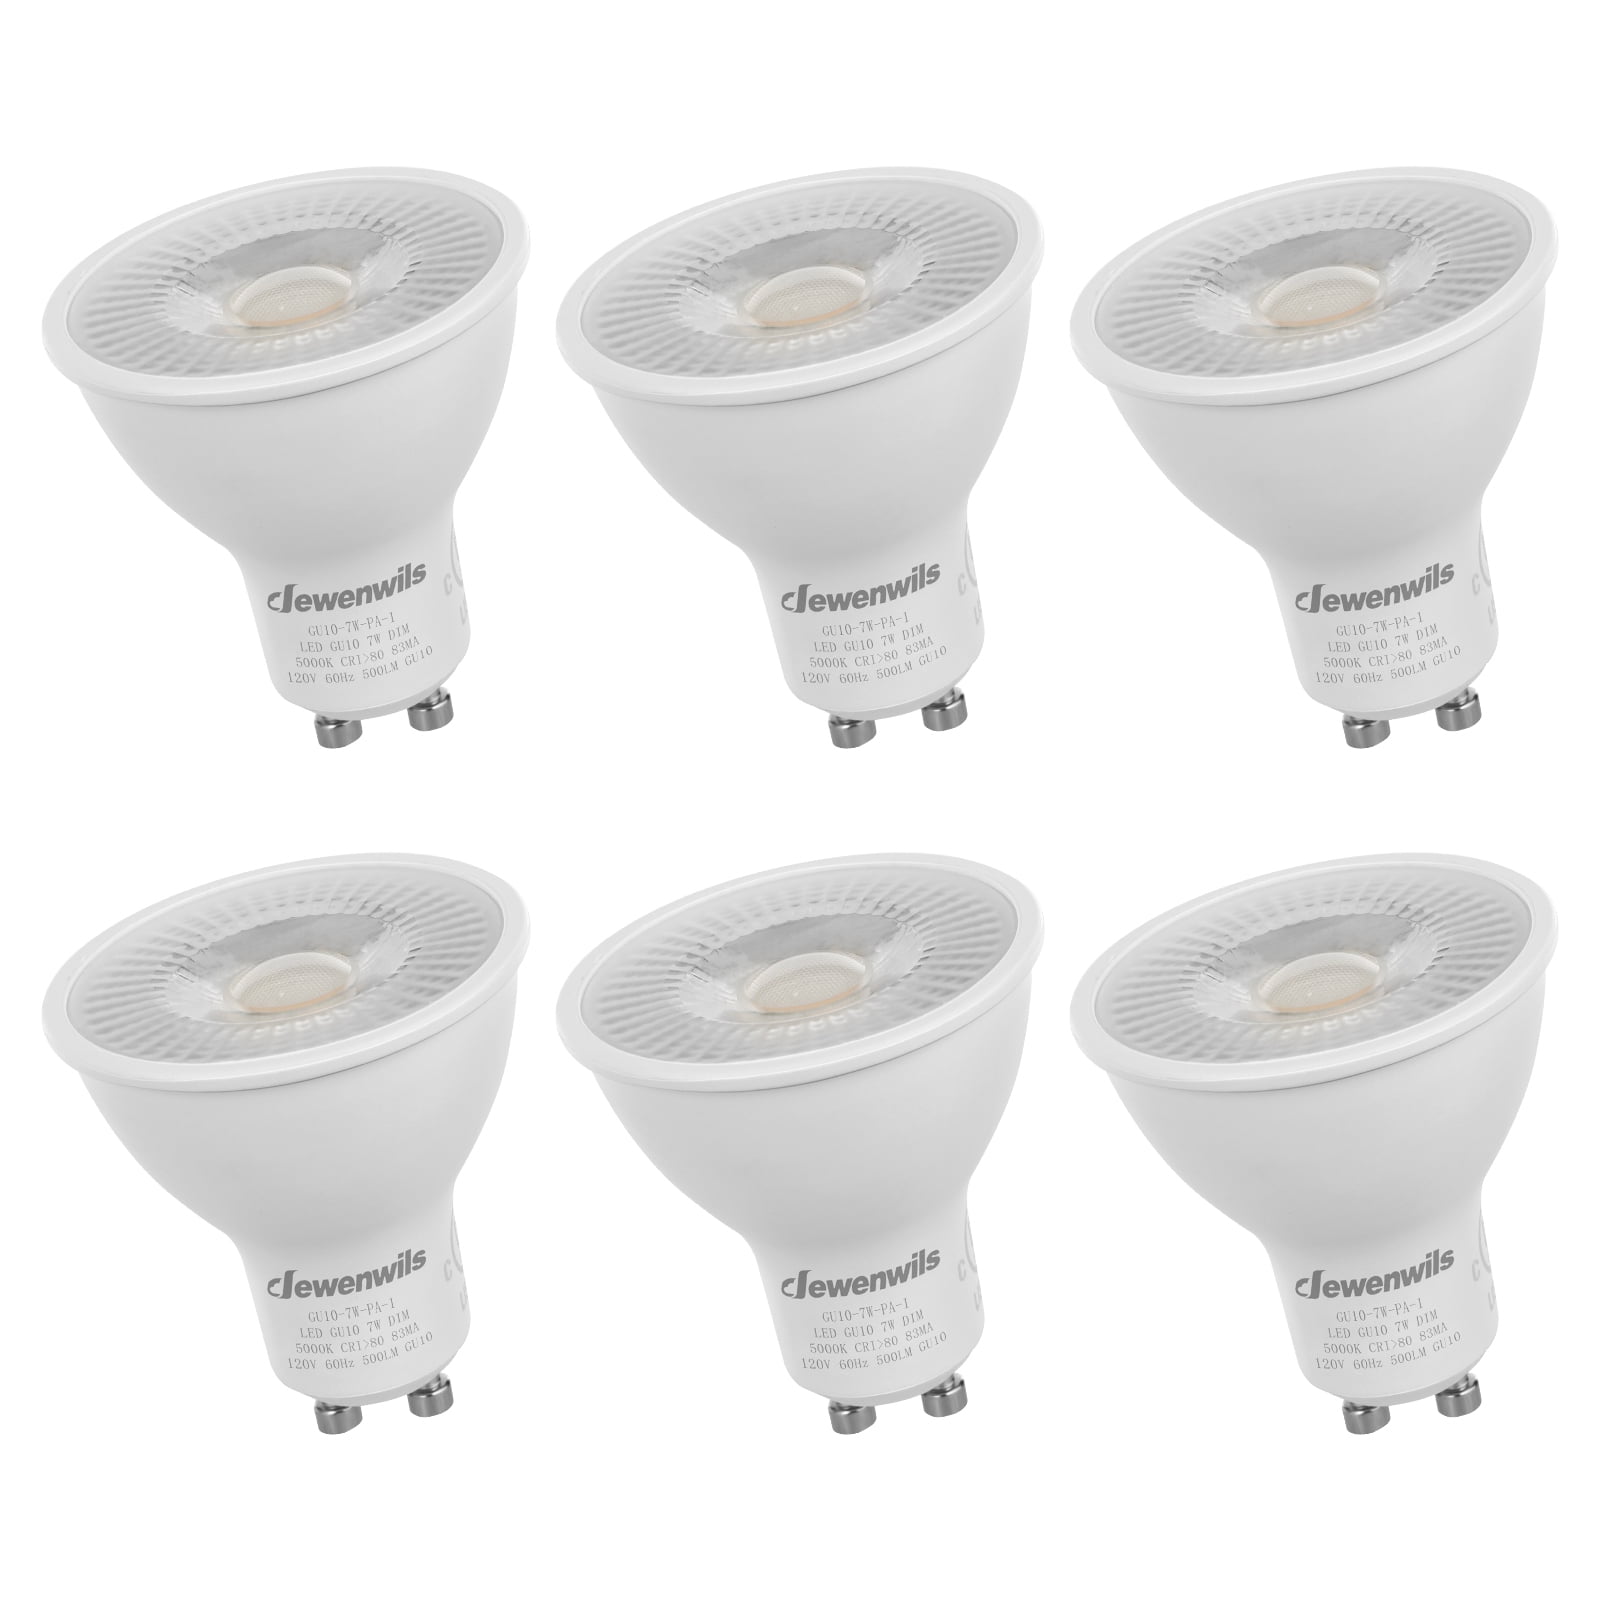 4 x 7W Dimmable GU10 Warm White LED Spot Light Lamp Bulb Low Energy 240V Joblot 